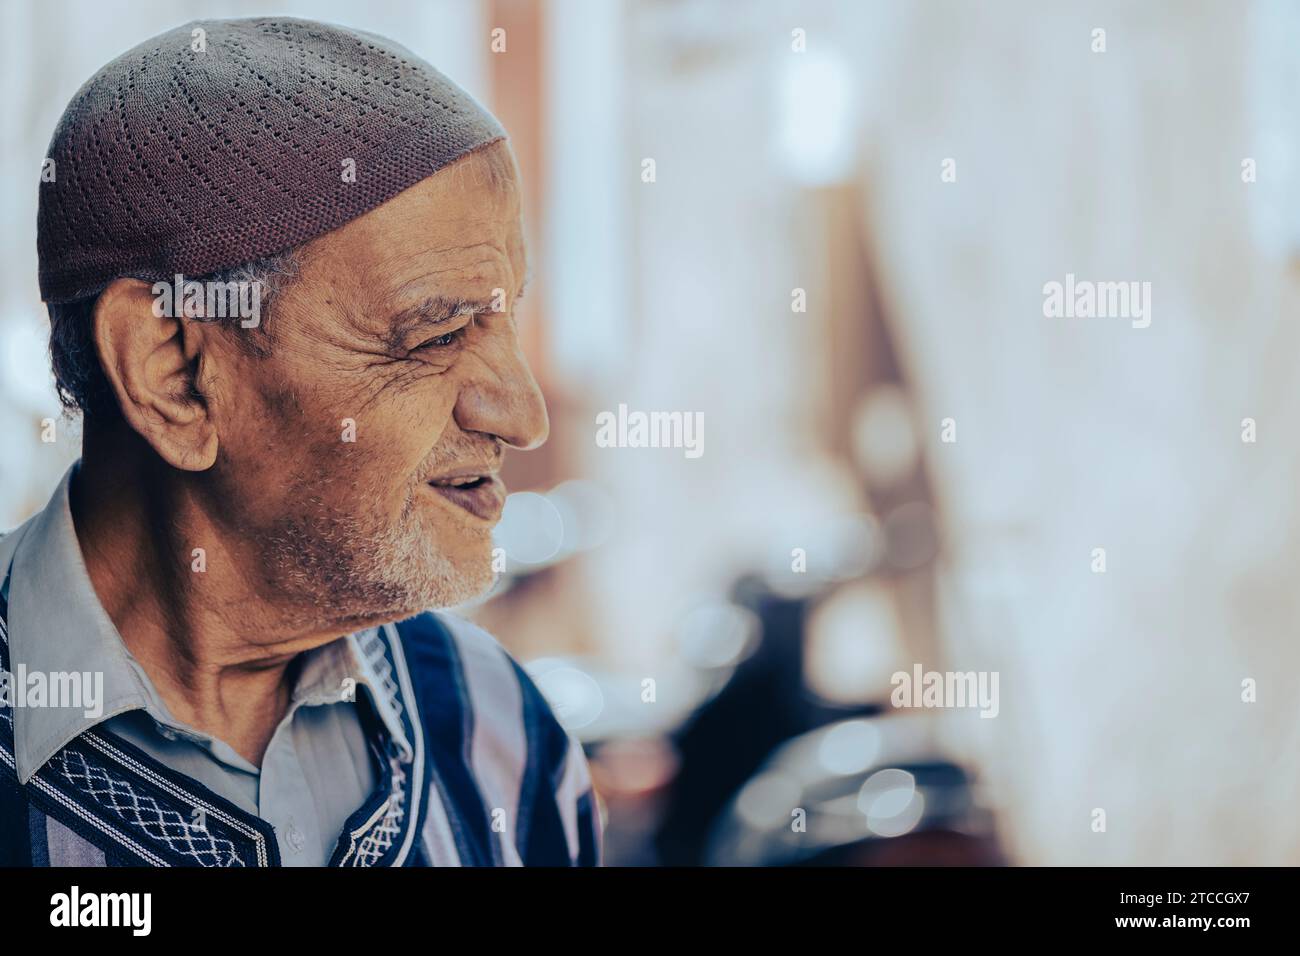 Marrakech, Marocco: Ritratto di un uomo musulmano marocchino che indossa abiti tradizionali e un cappello kufi. Gente di Marrakech. Foto Stock